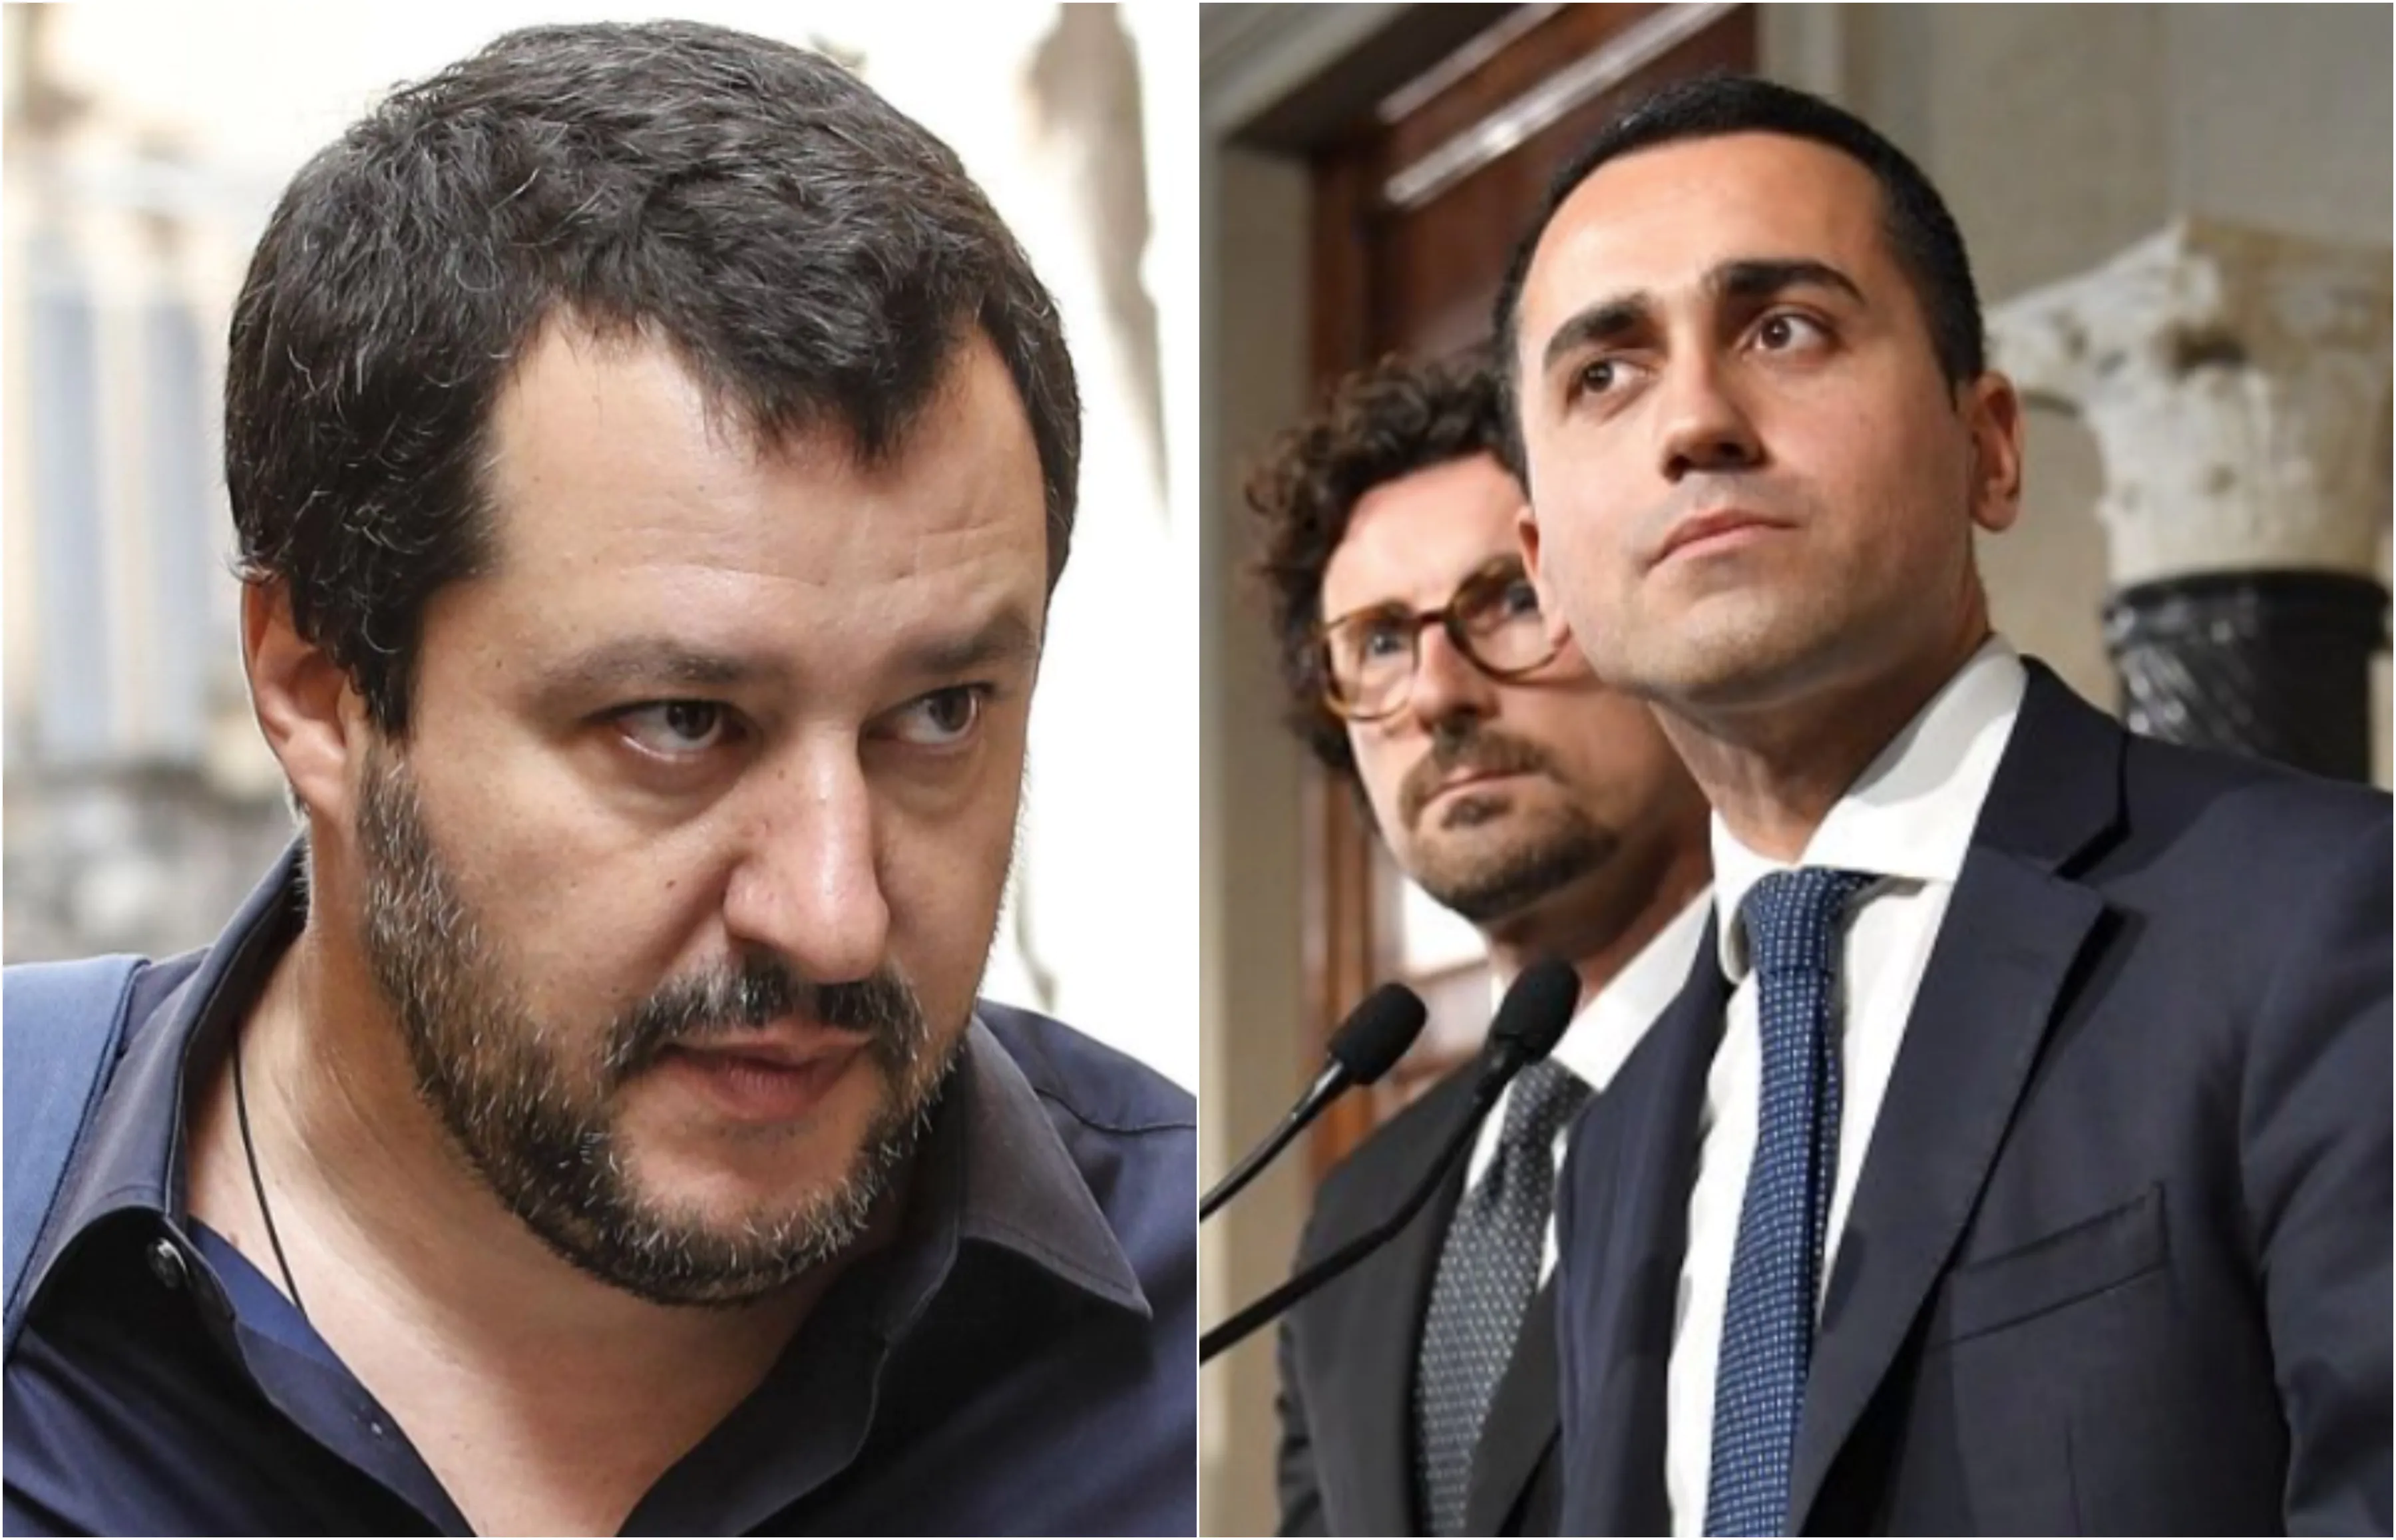 La crisi di governo italiana